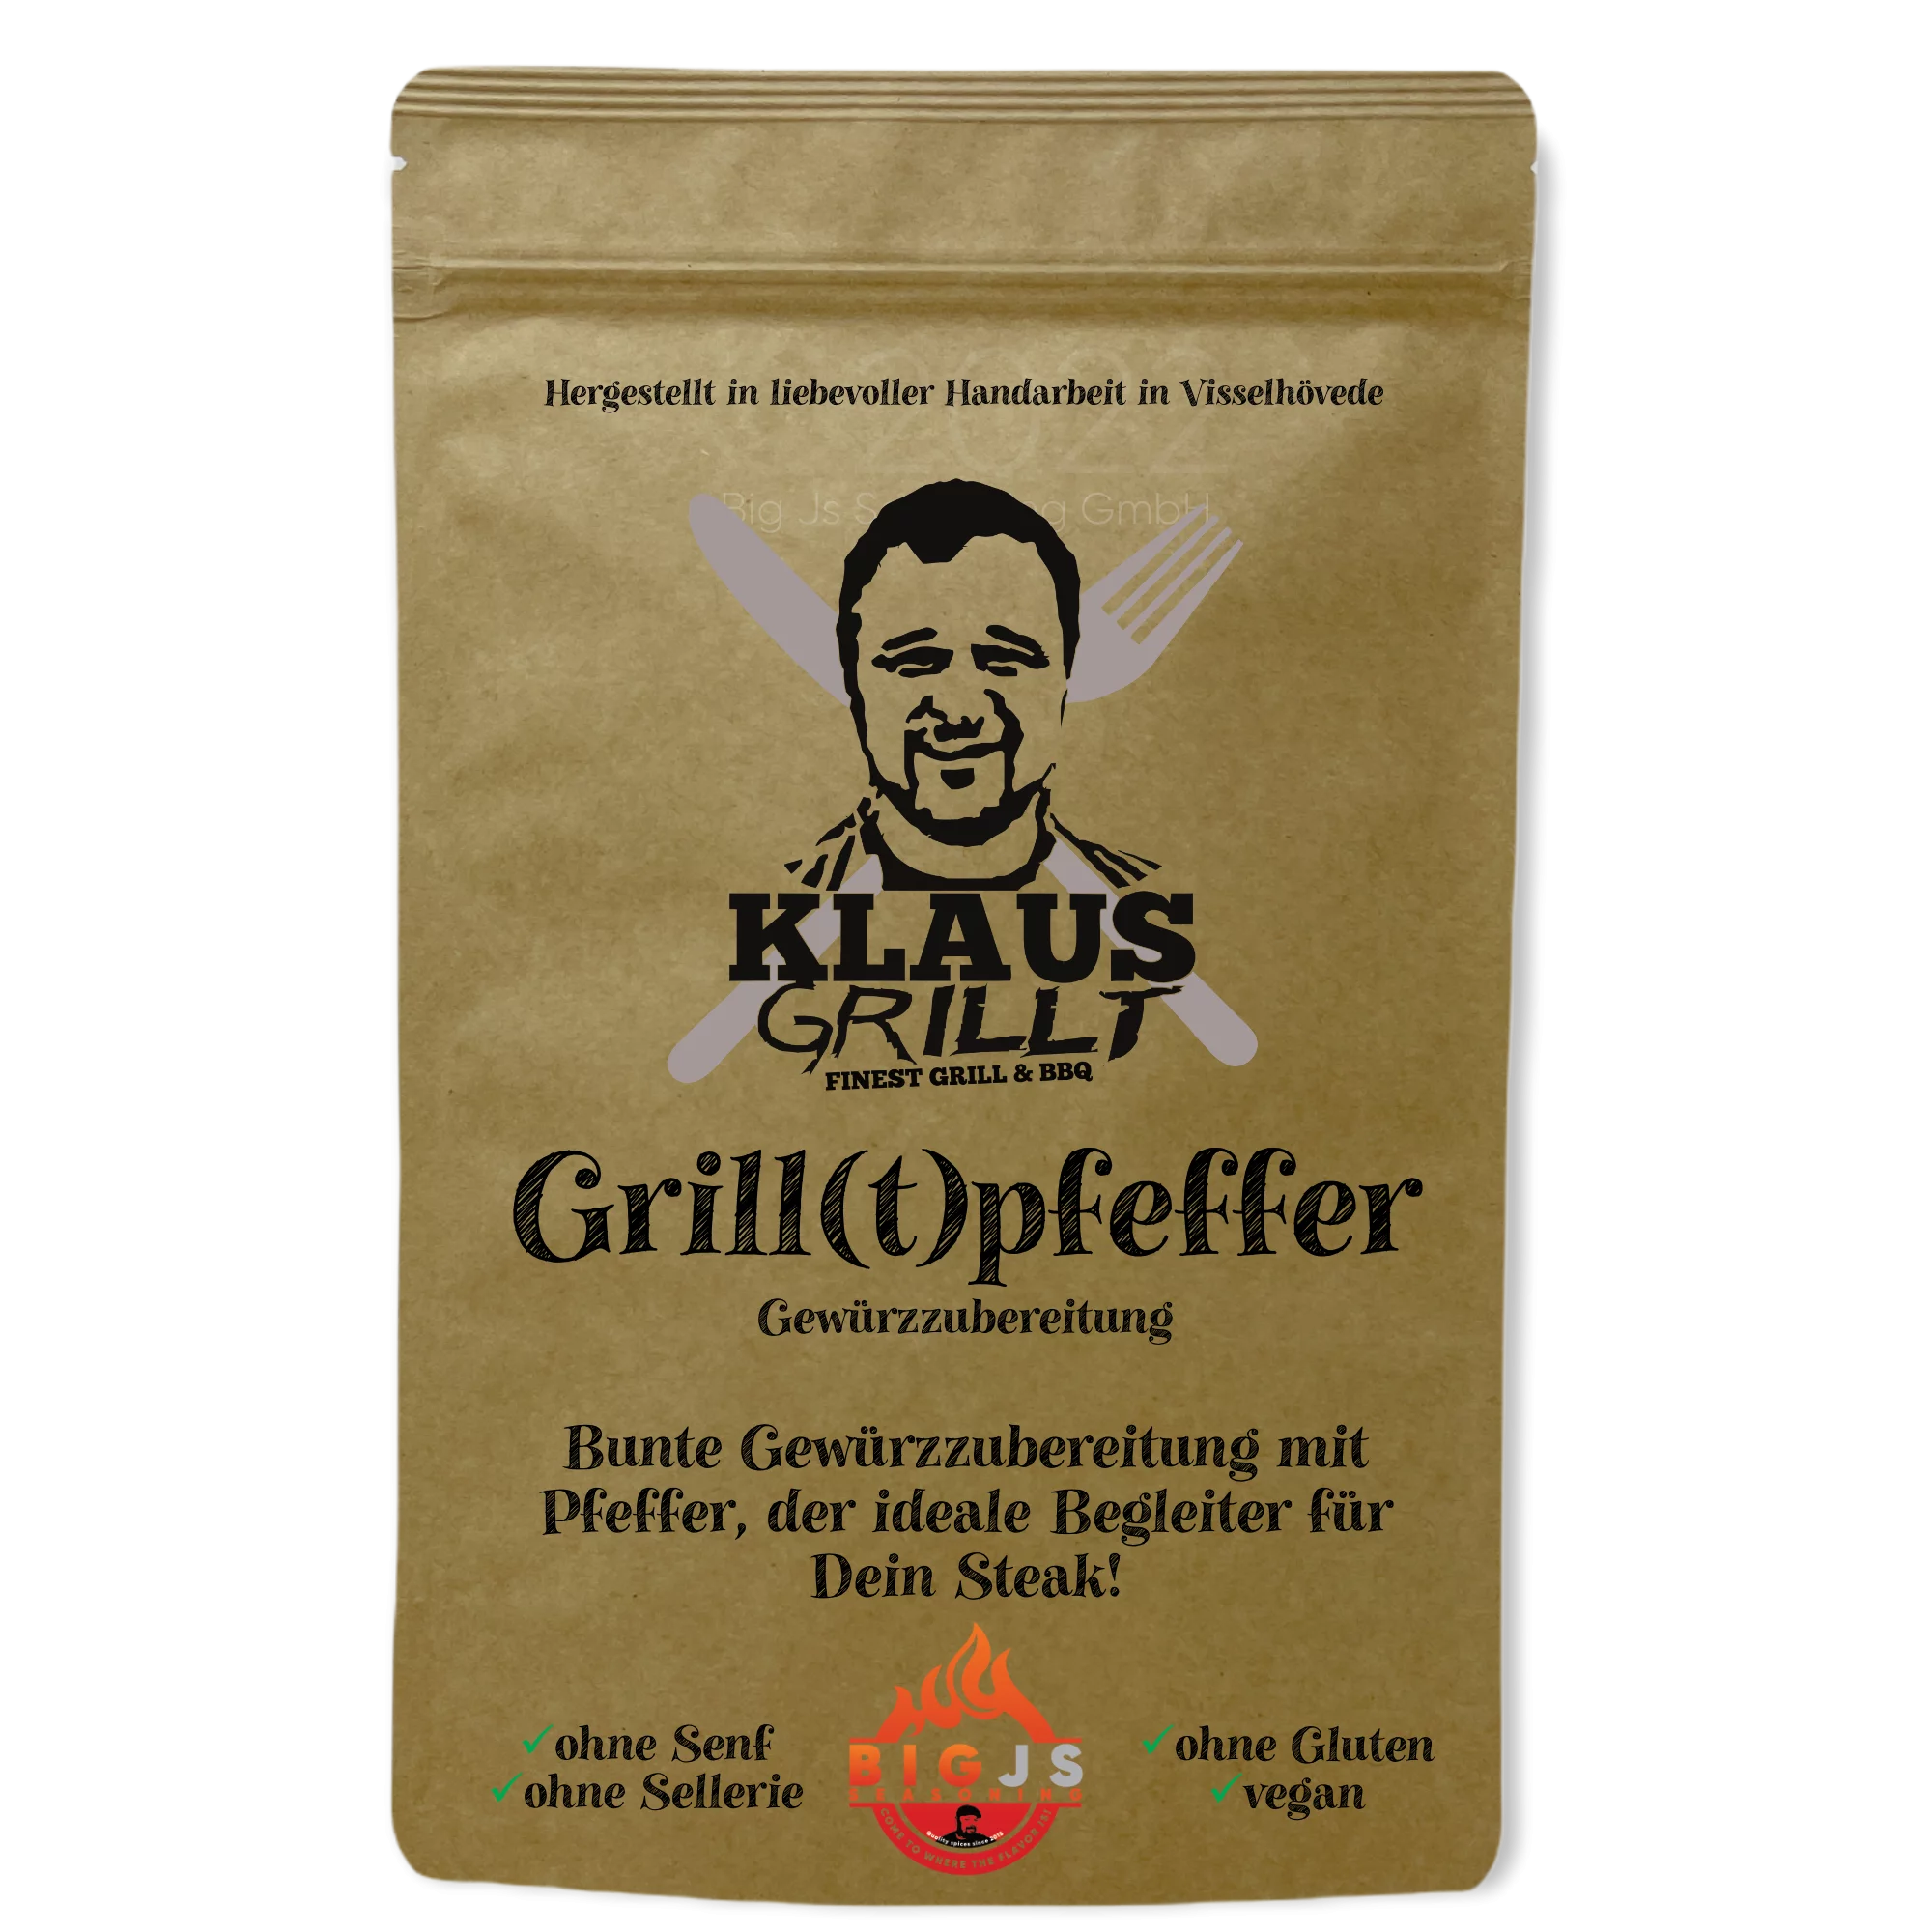 Klaus grillt, Grill(t)pfeffer, 450g Standbeutel